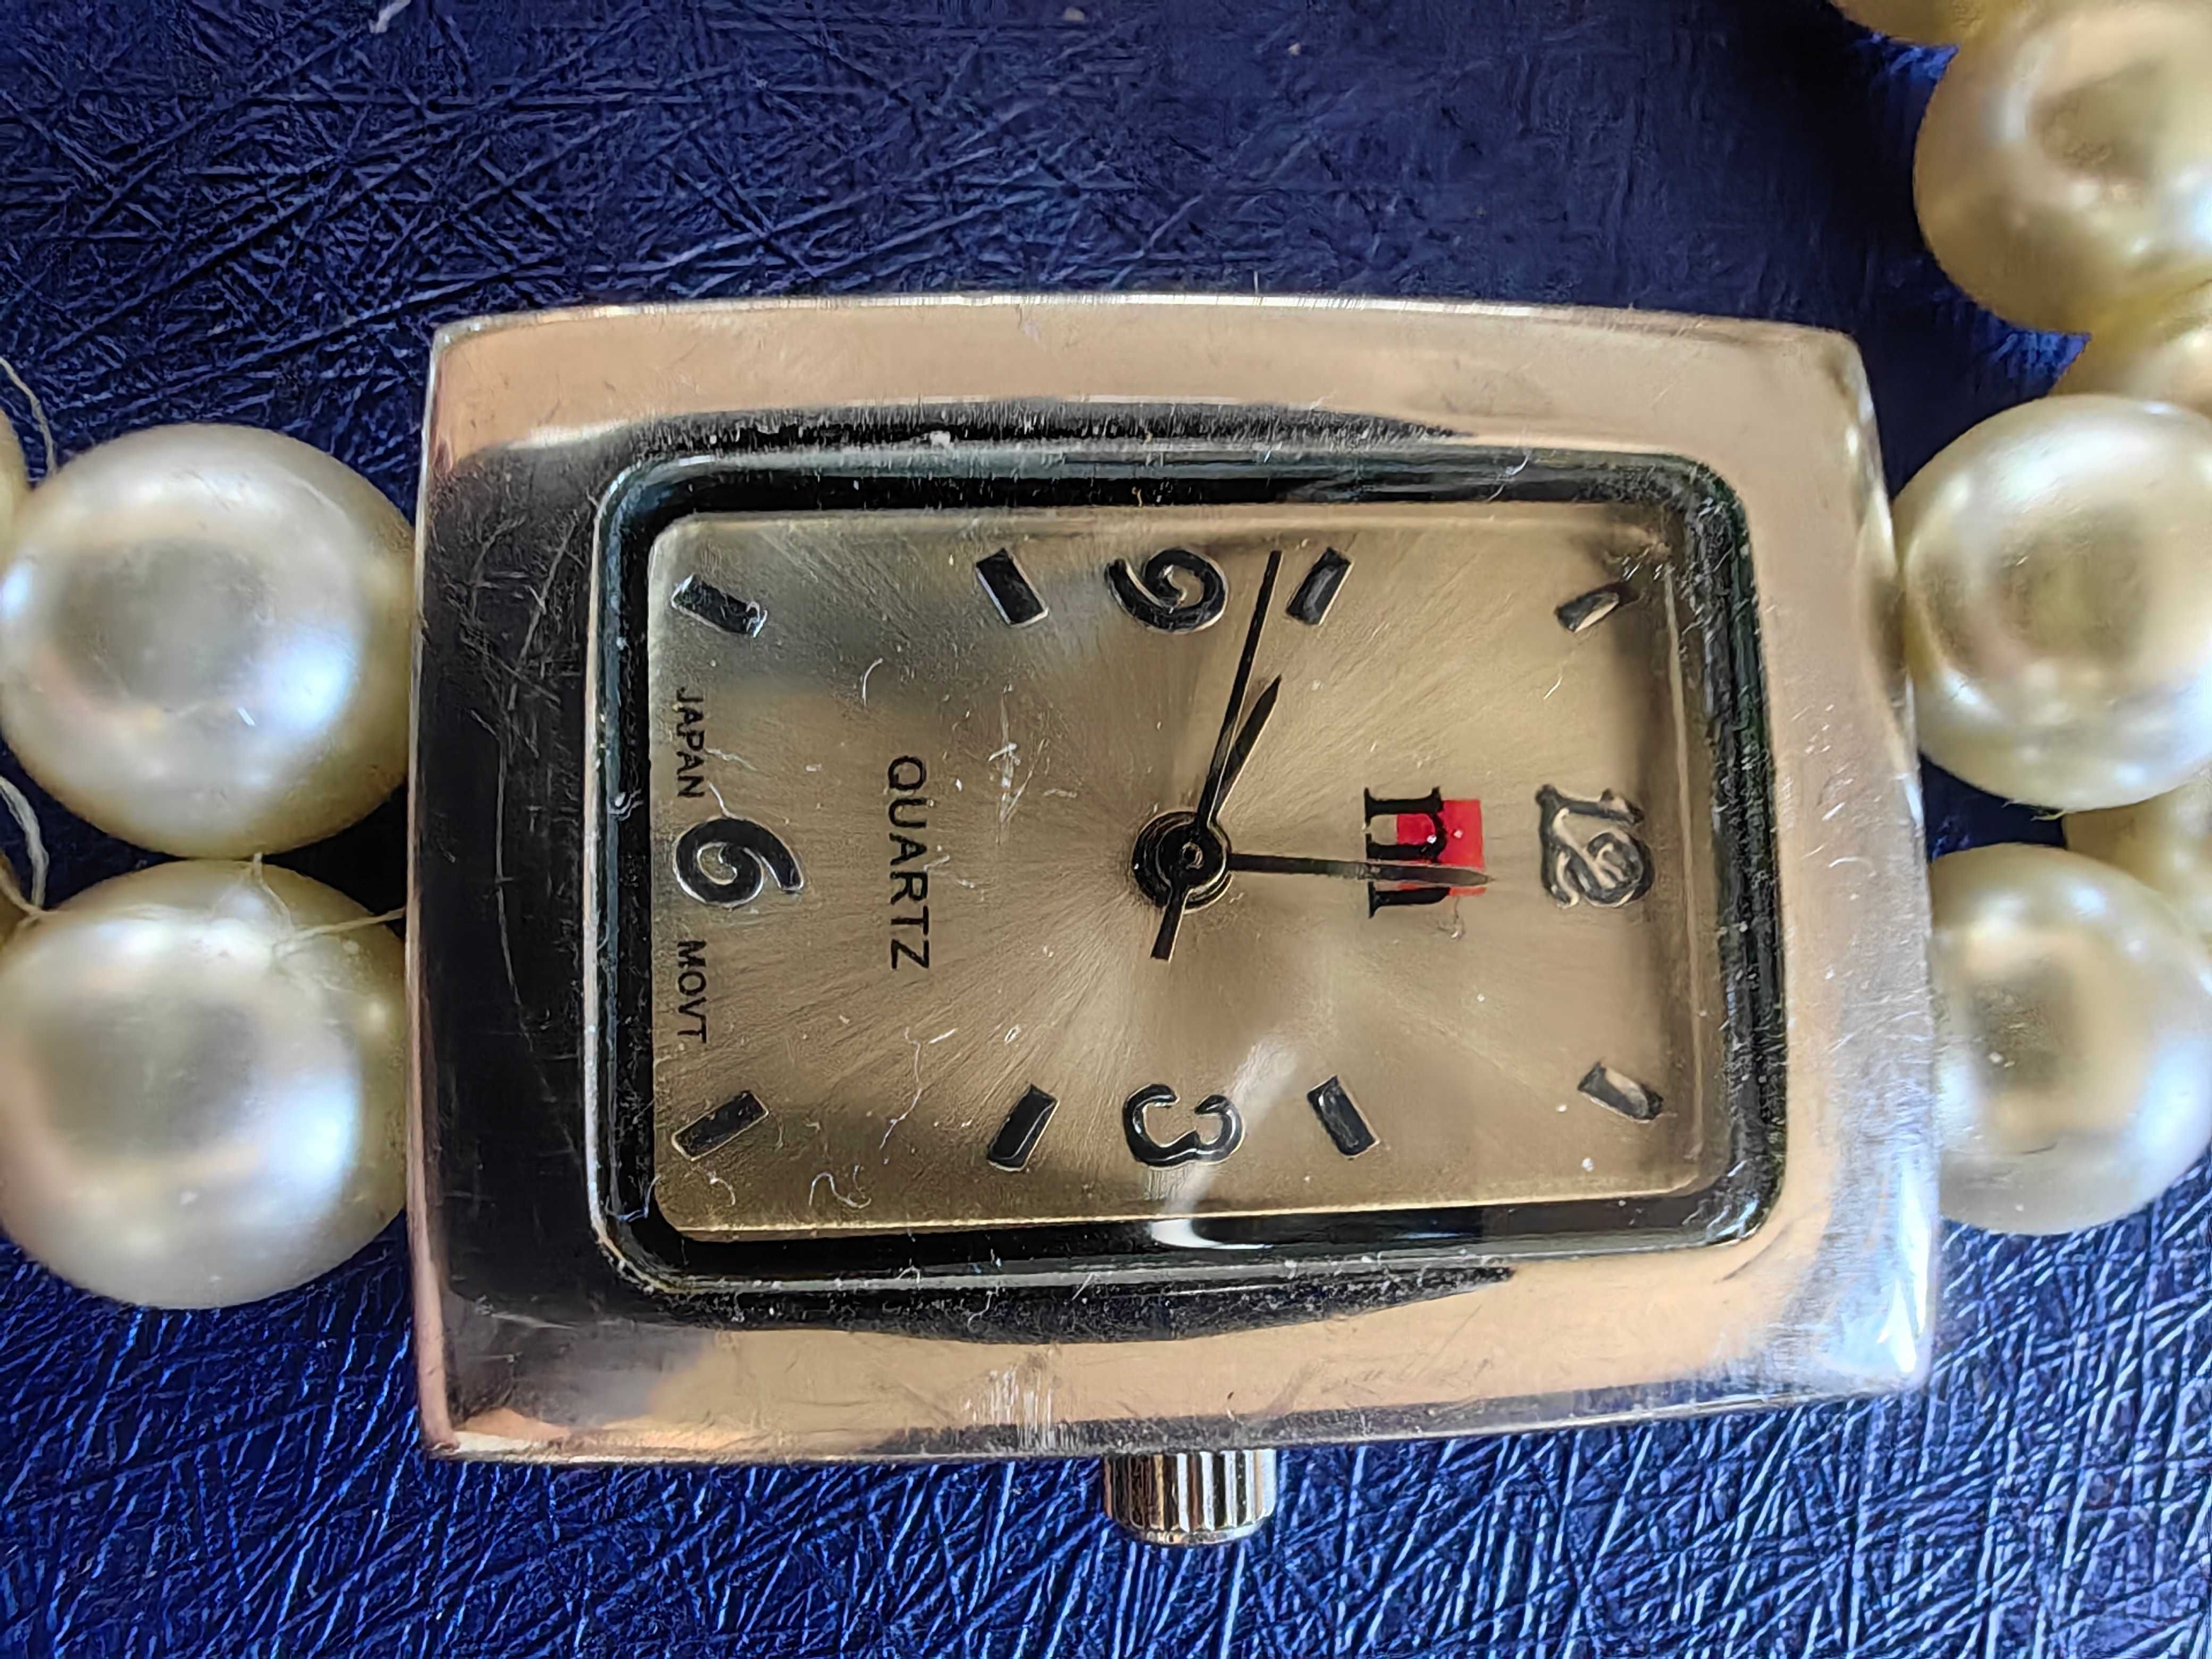 Damski zegarek Japan Movt firmy M quartz - bransoleta z pereł